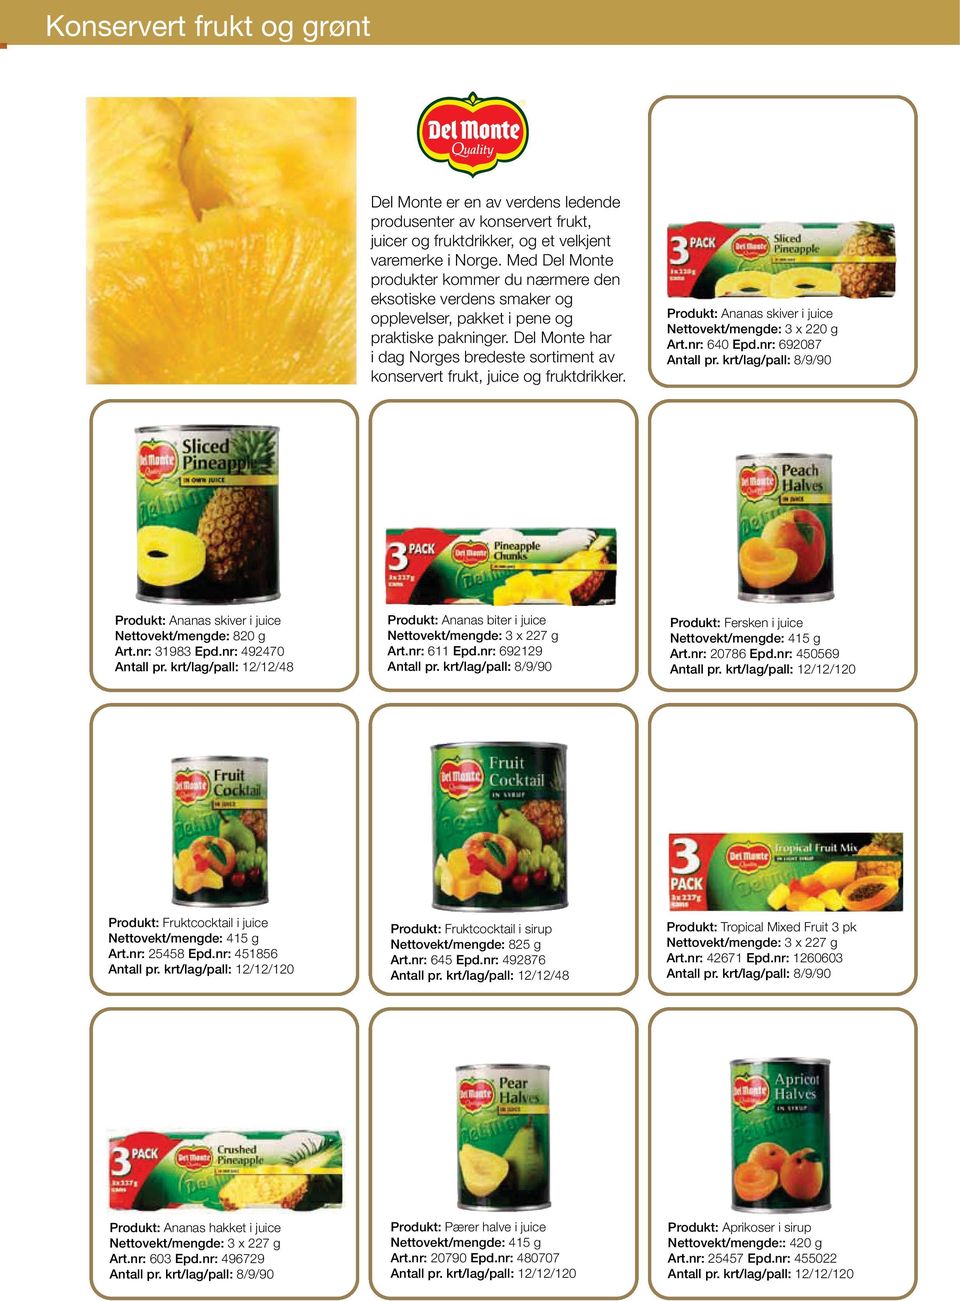 Del Monte har i dag Norges bredeste sortiment av konservert frukt, juice og fruktdrikker. Produkt: Ananas skiver i juice Nettovekt/mengde: 3 x 220 g Art.nr: 640 Epd.nr: 692087 Antall pr.